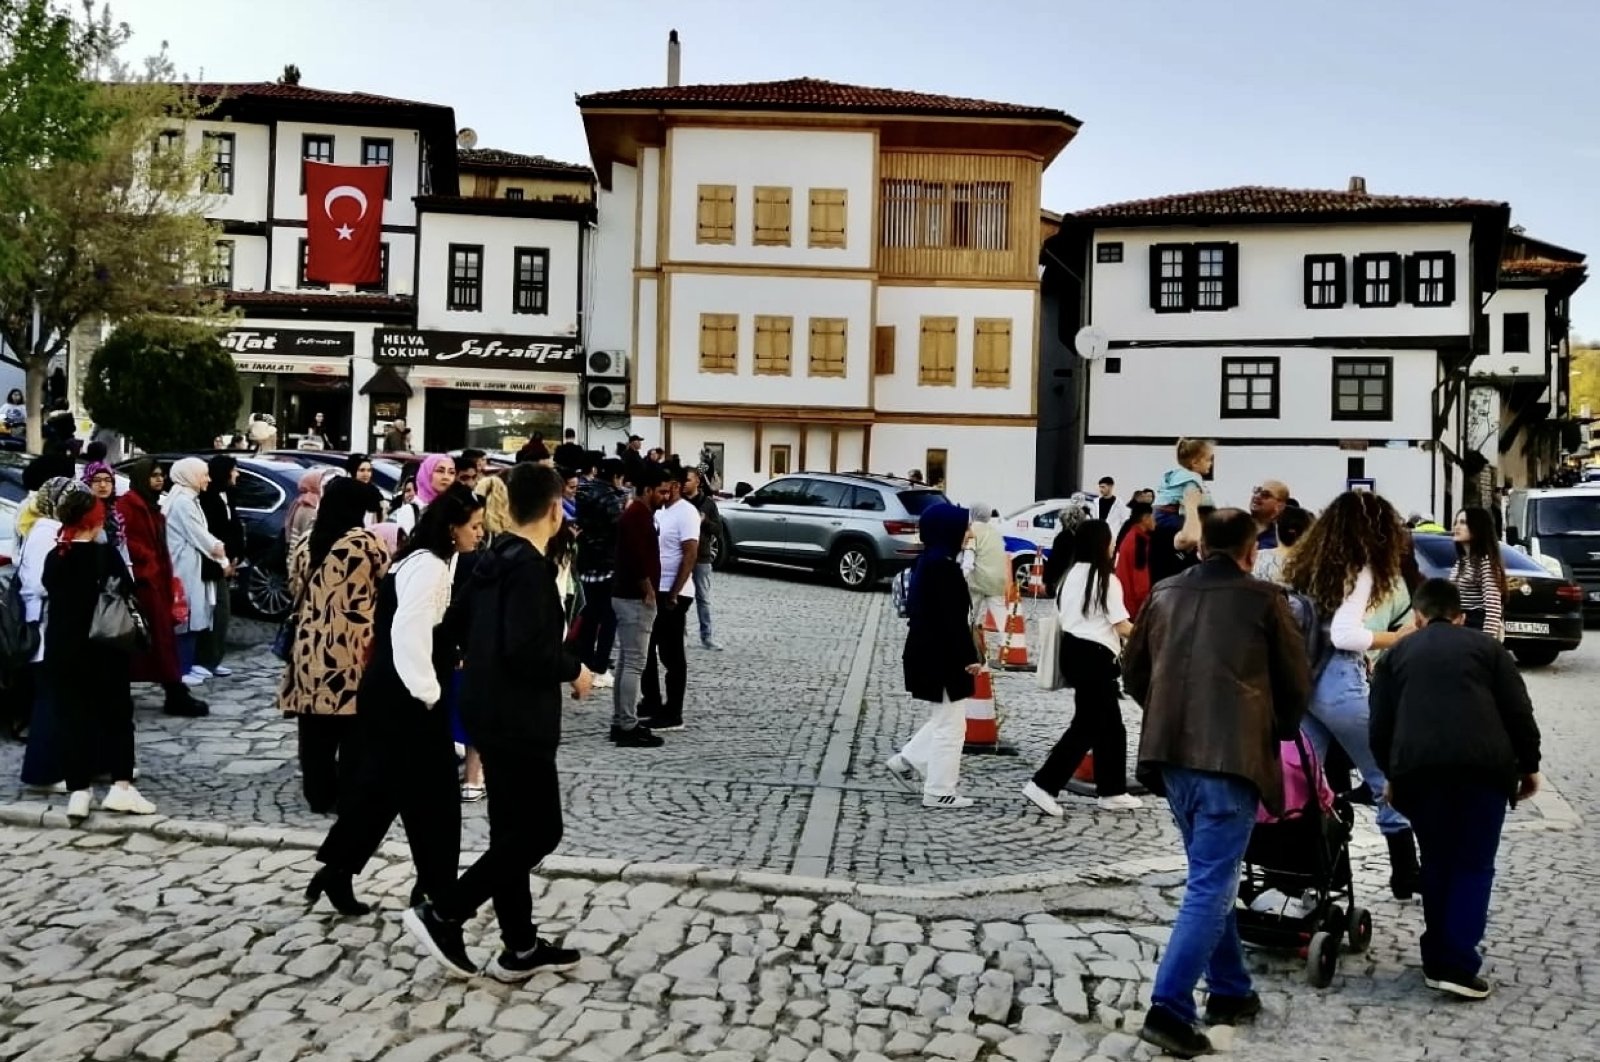 Mansion Ottoman di Safranbolu Türkiye populer selama Ramadan Bayram